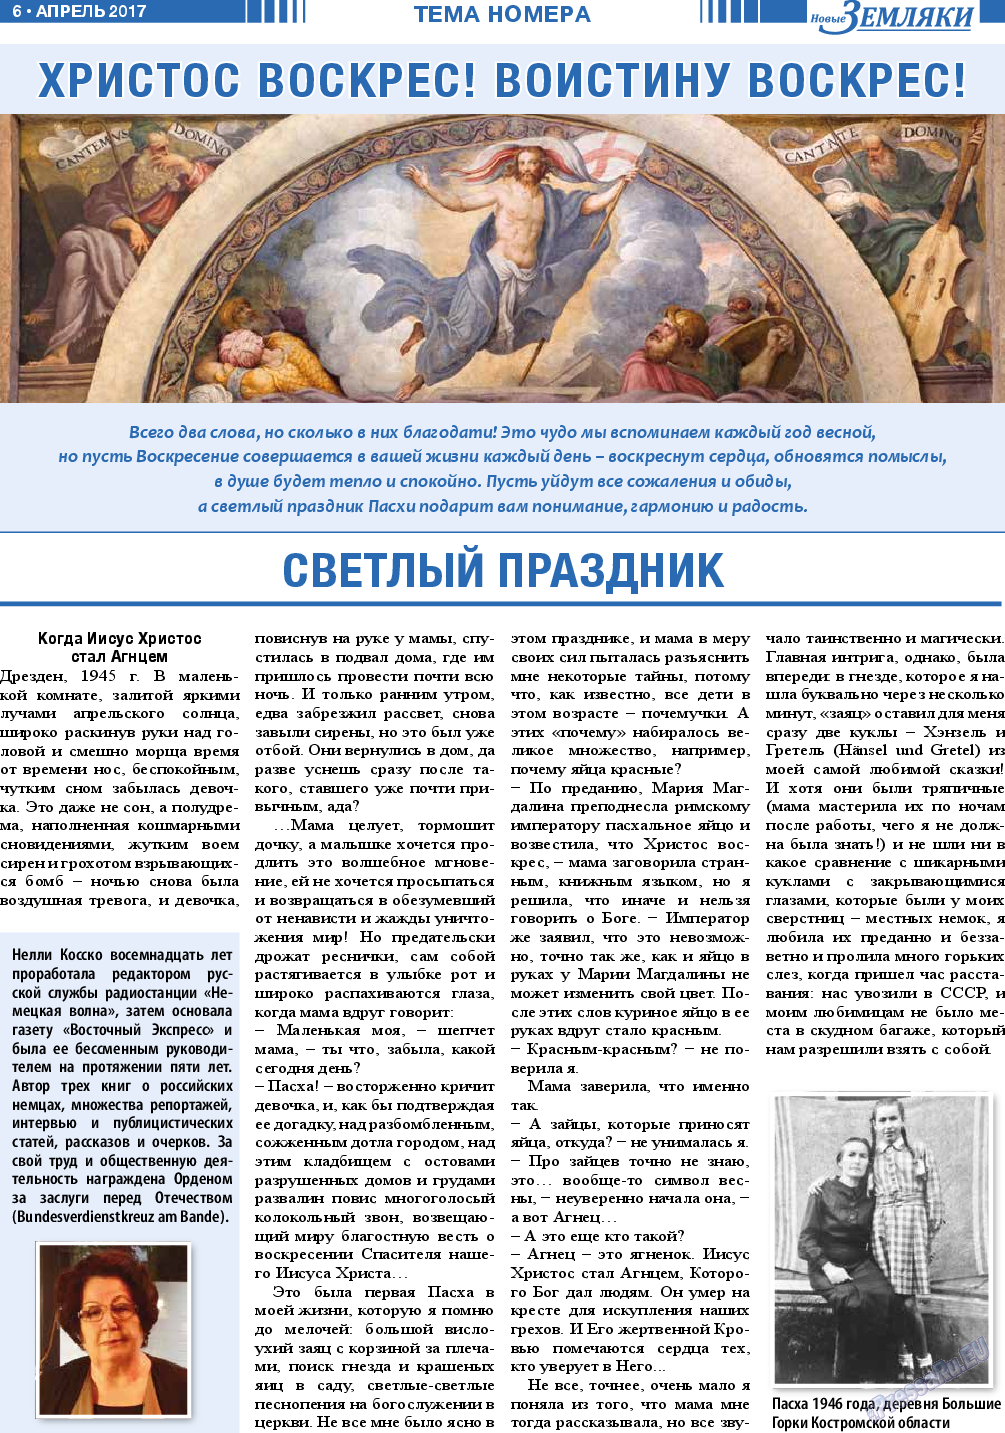 Новые Земляки, газета. 2017 №4 стр.6